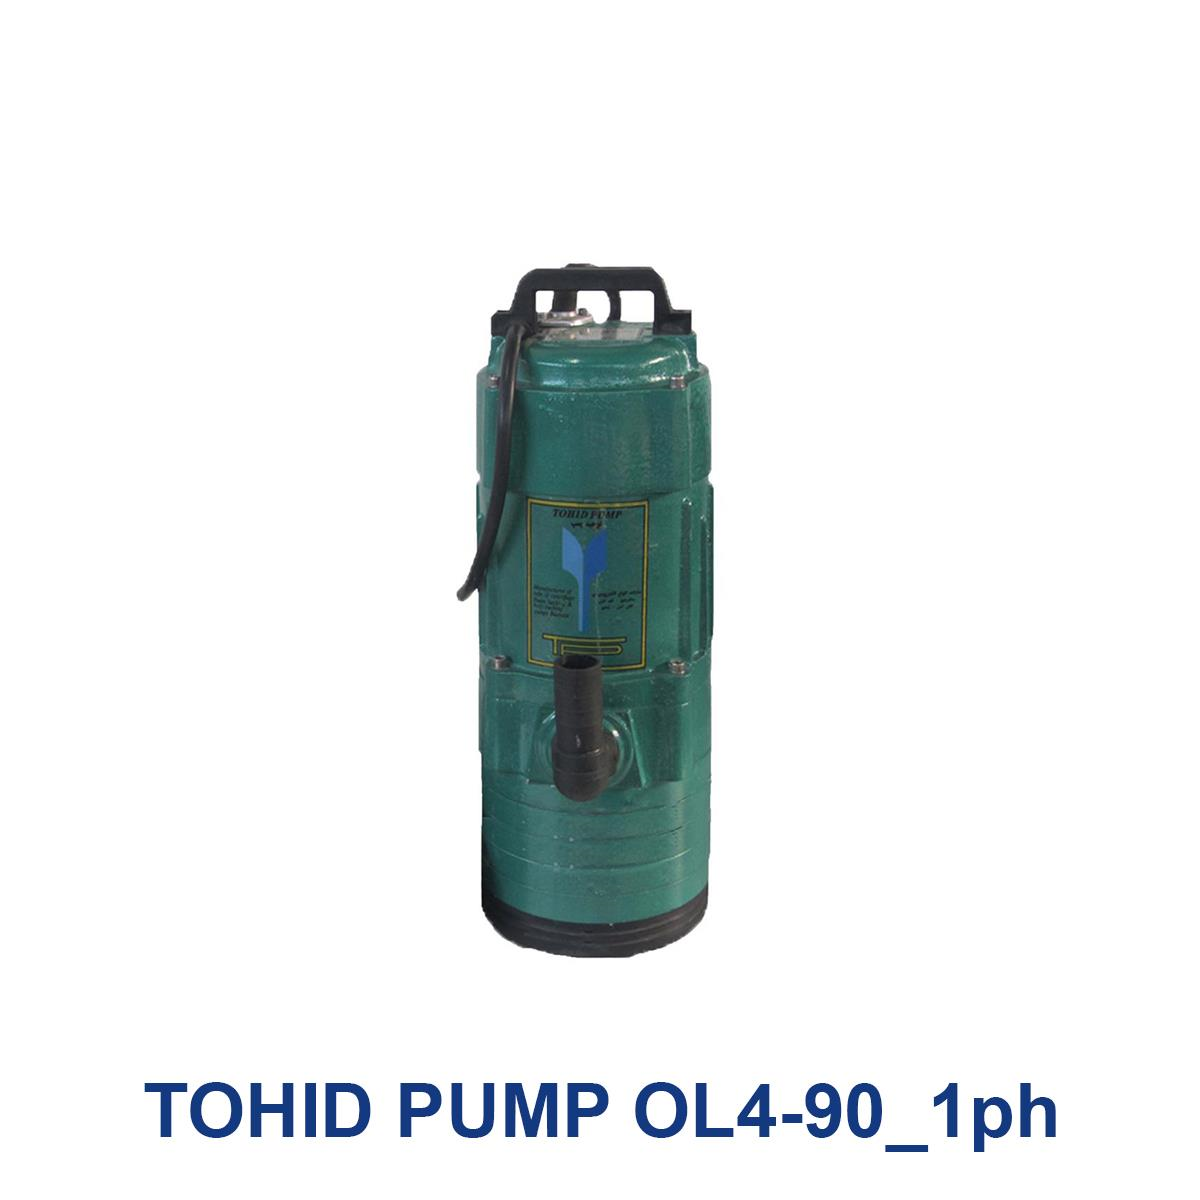 TOHID-PUMP-OL4-90_1ph